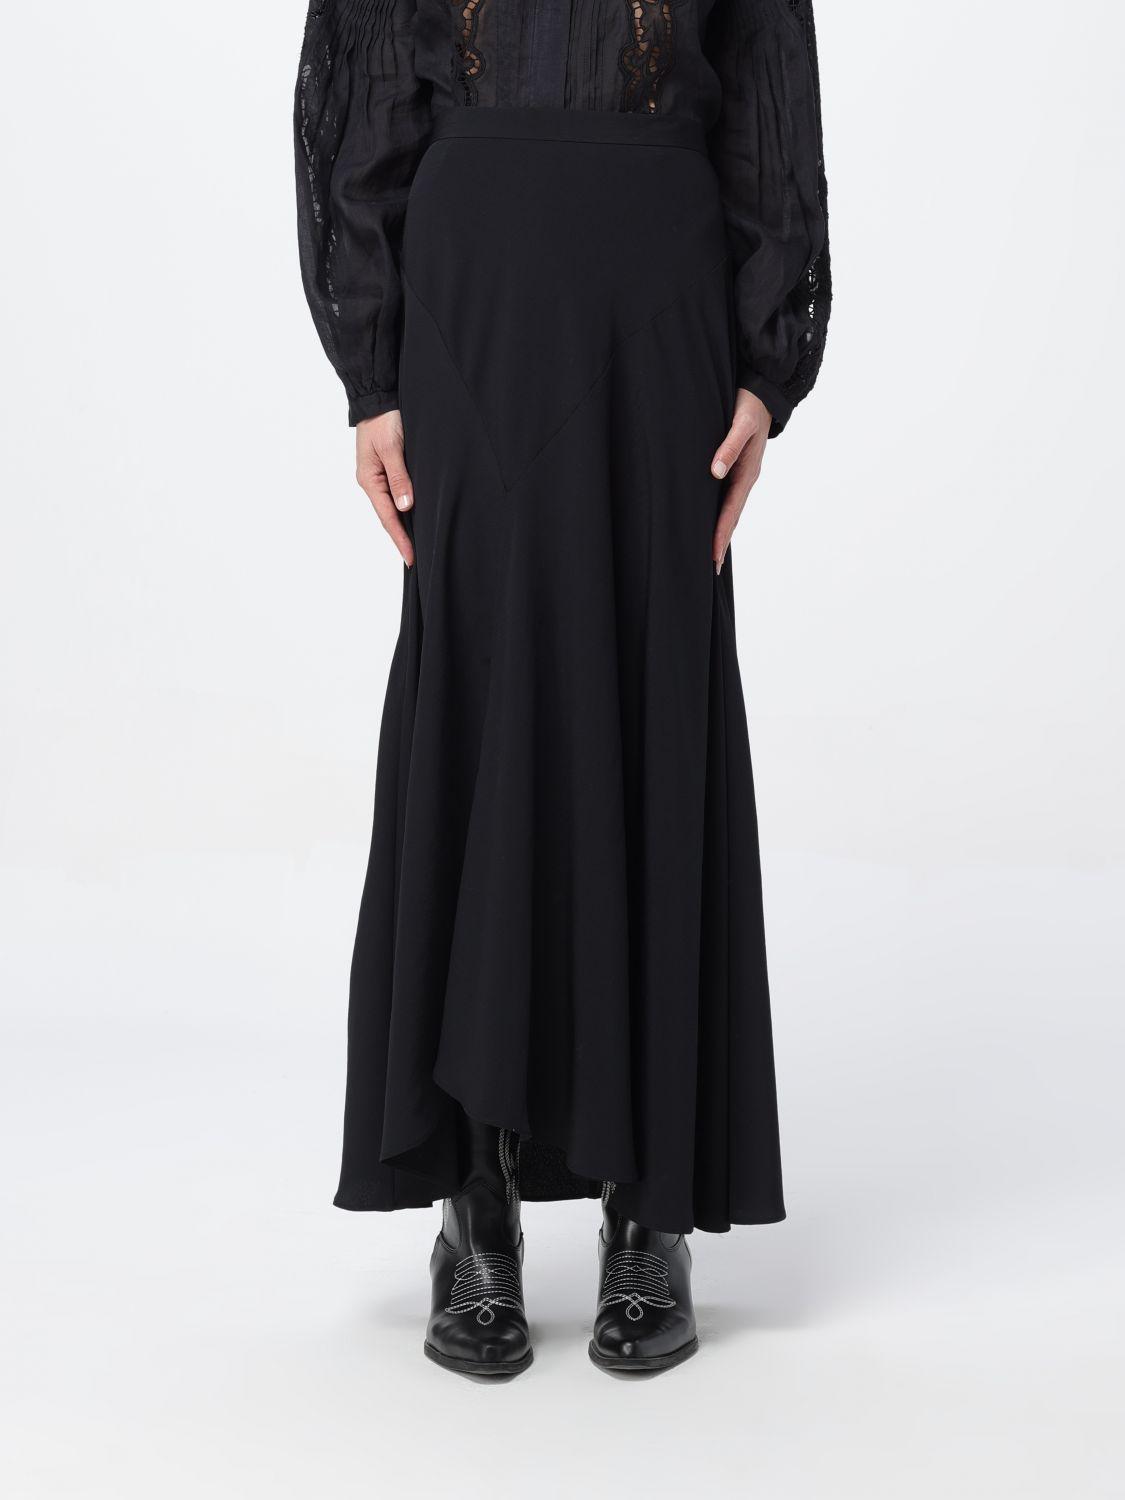 Isabel Marant Skirt in Black | Lyst UK